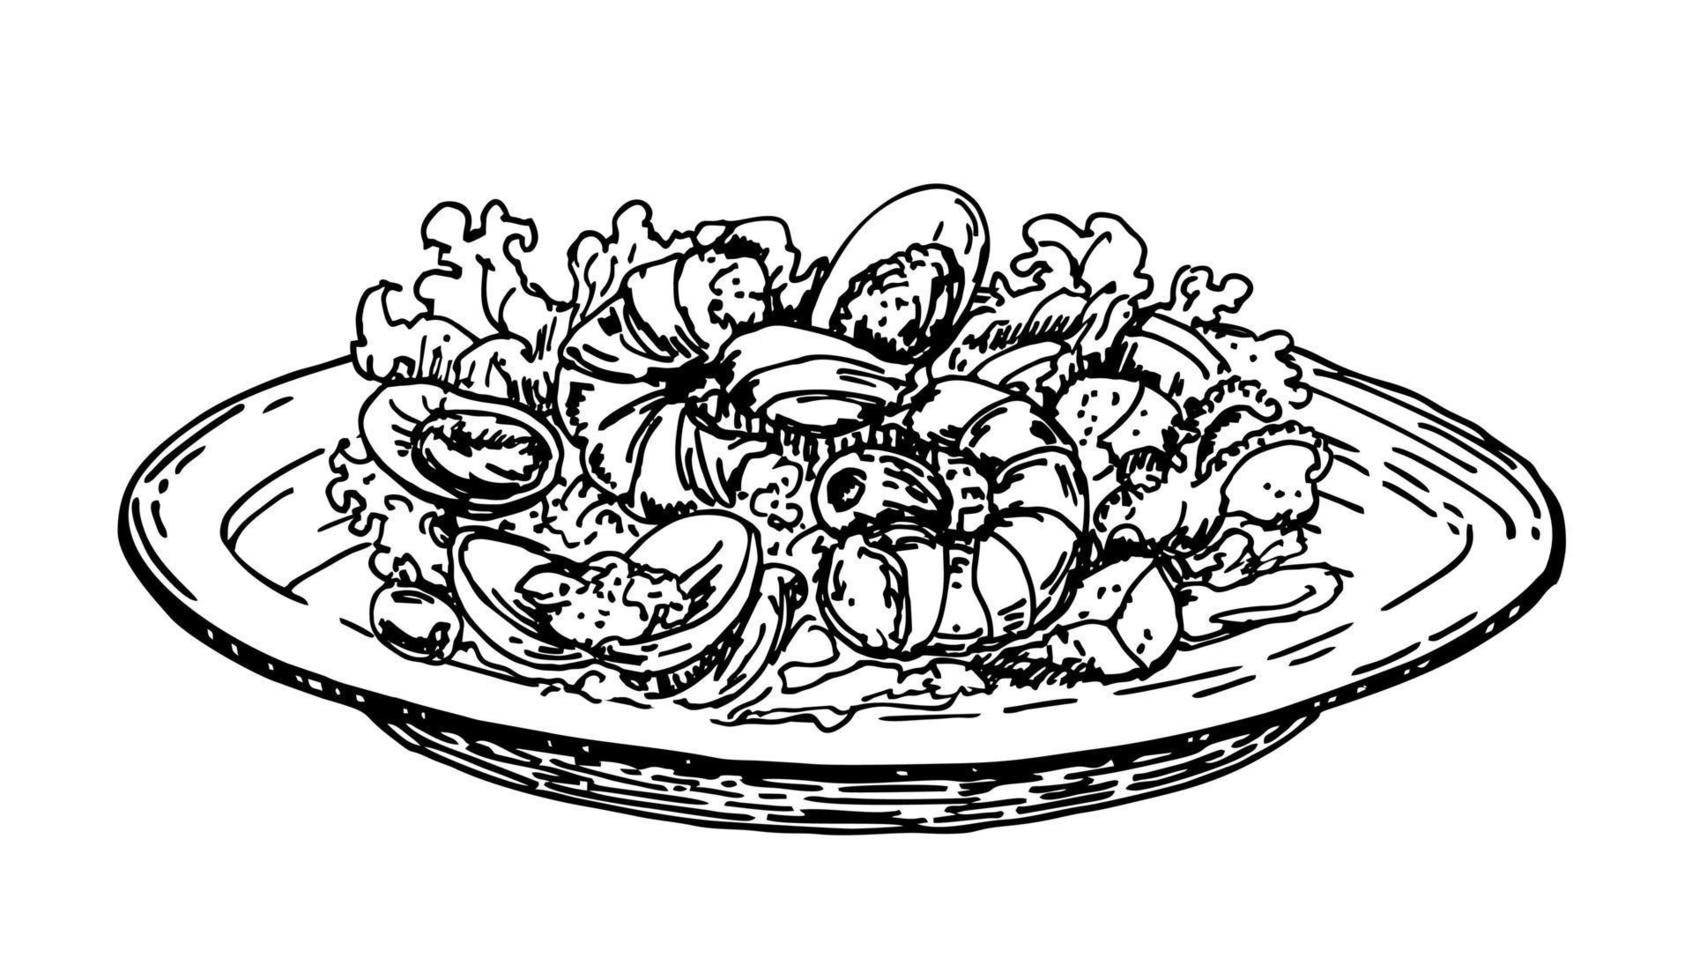 handgezeichneter Garnelensalat. Skizzenstil. leckerer Salat mit Meeresfrüchten und Gemüse auf dem Teller vektor